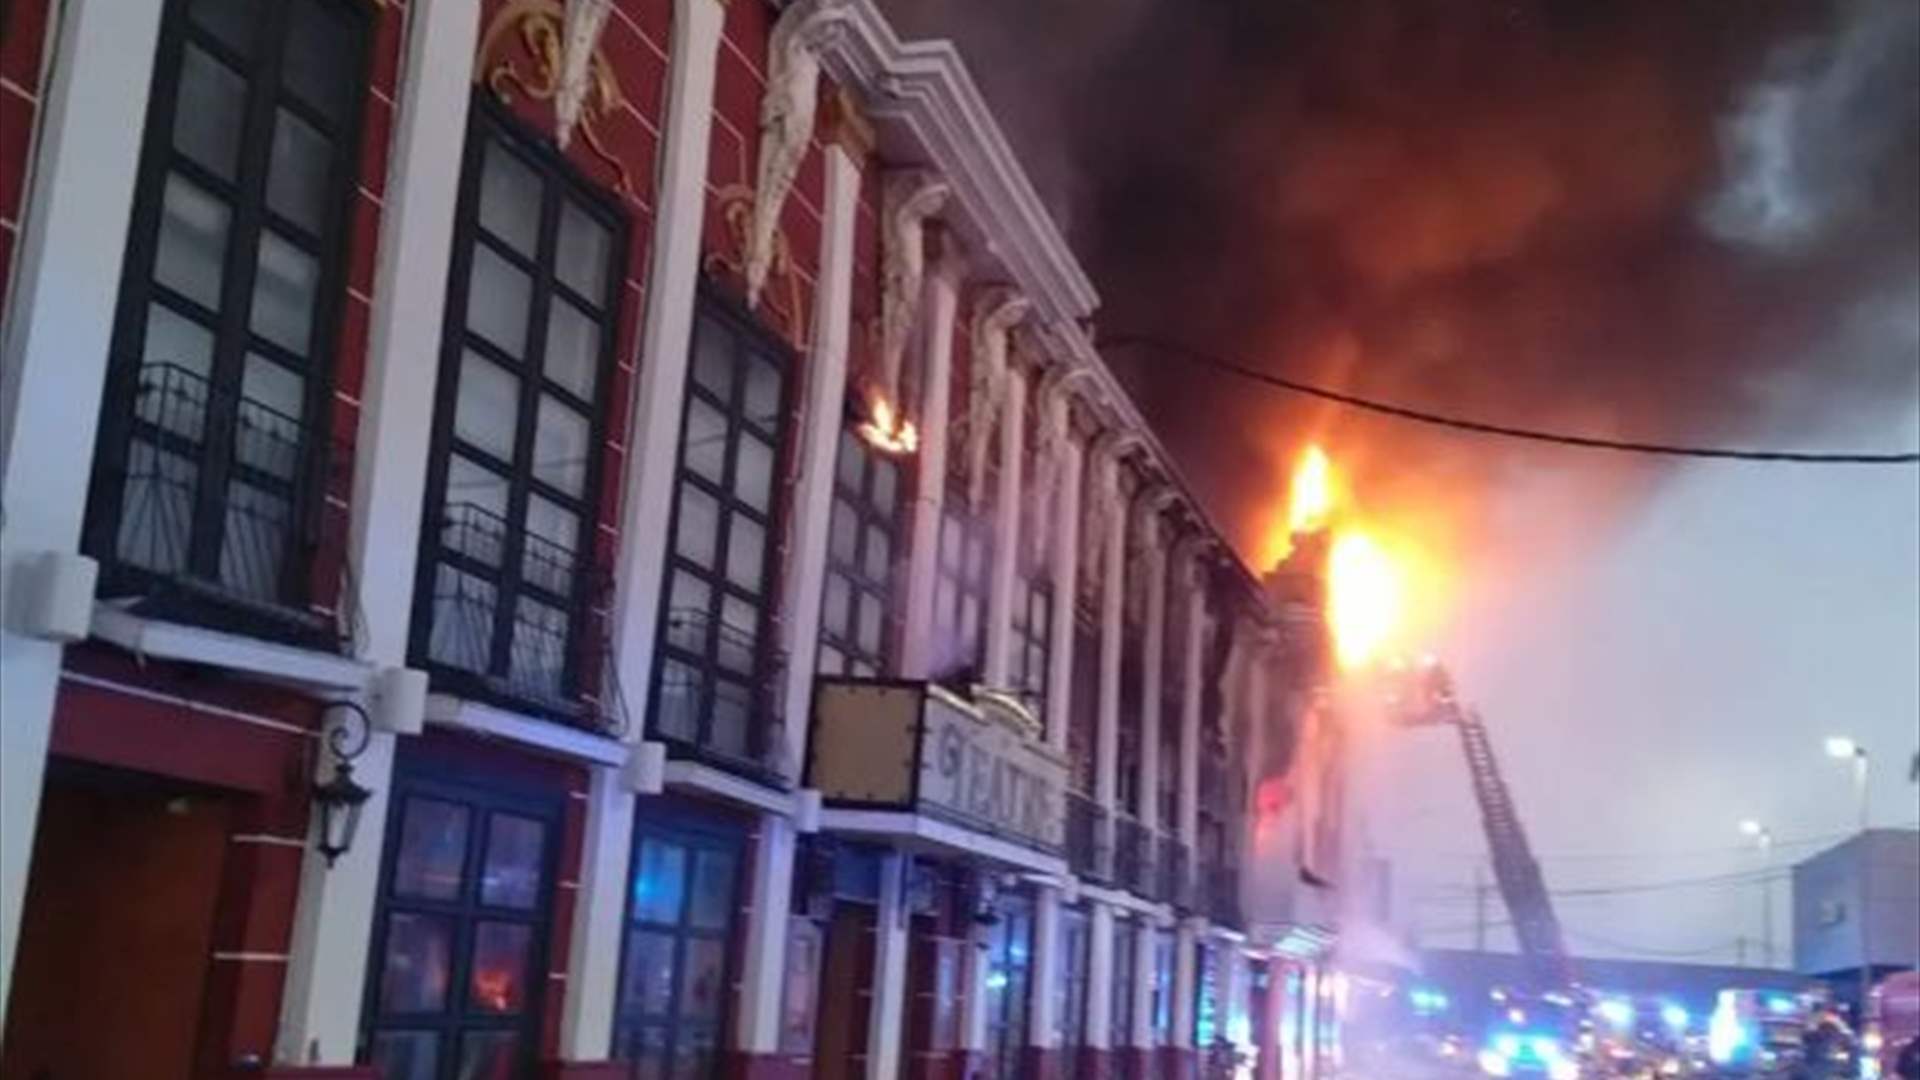 At least six dead after nightclub fire in southeastern Spain